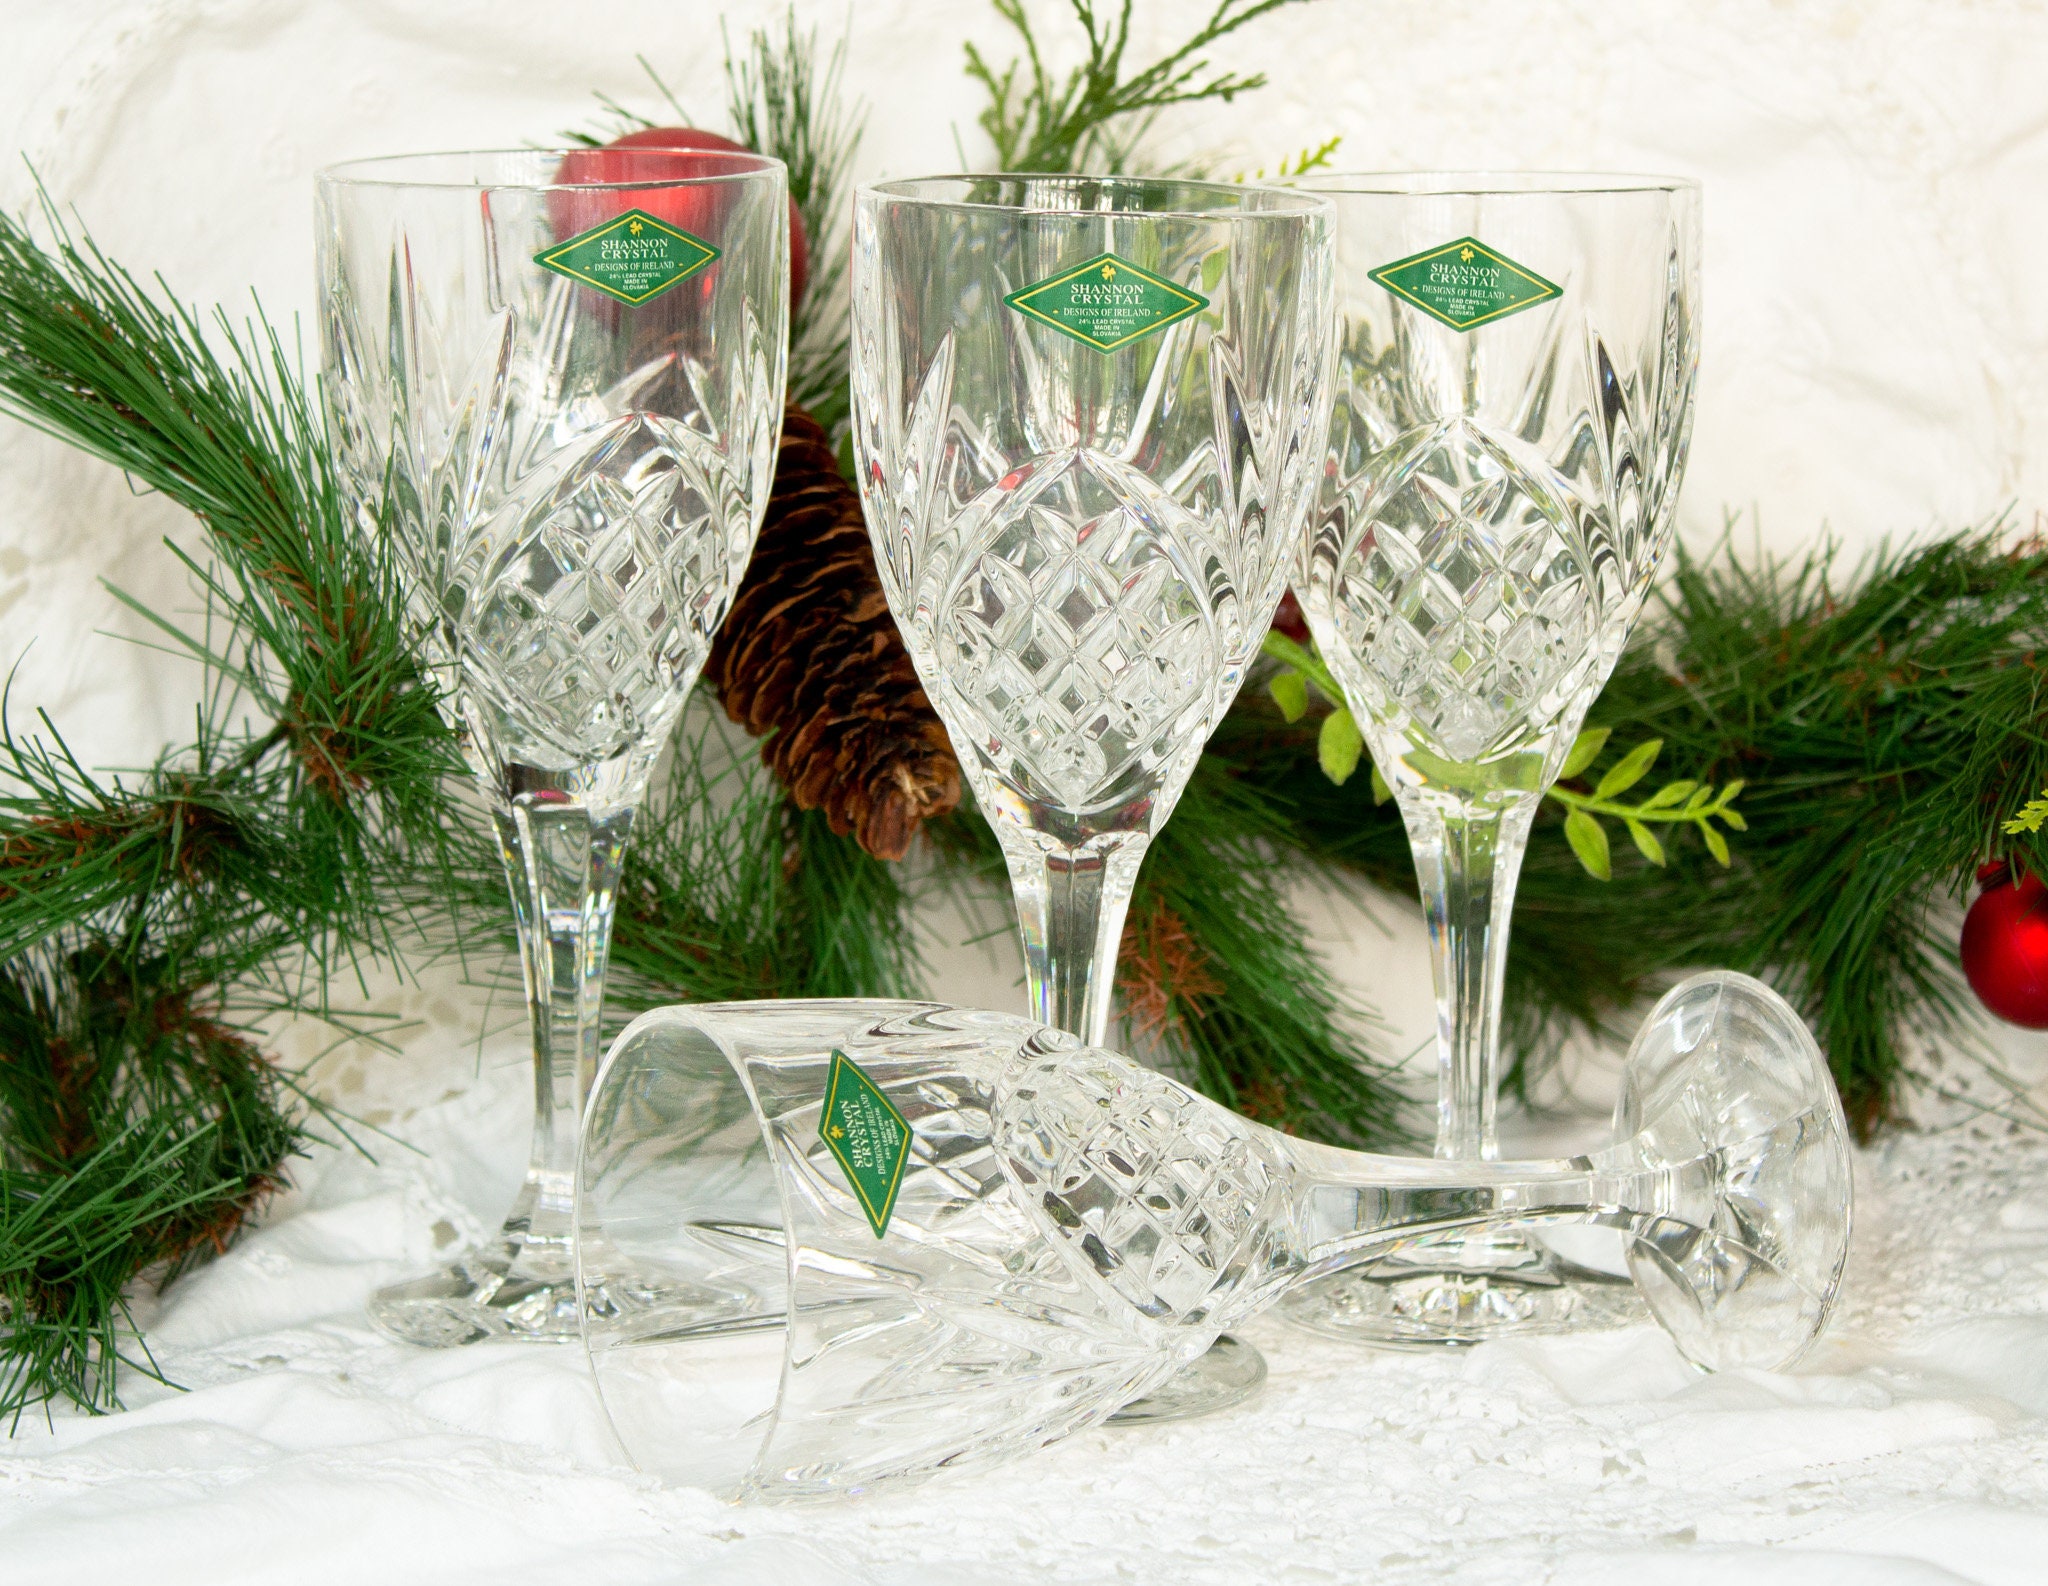 Set of 4 crystal water goblet stemware by designer Shannon Crystal.